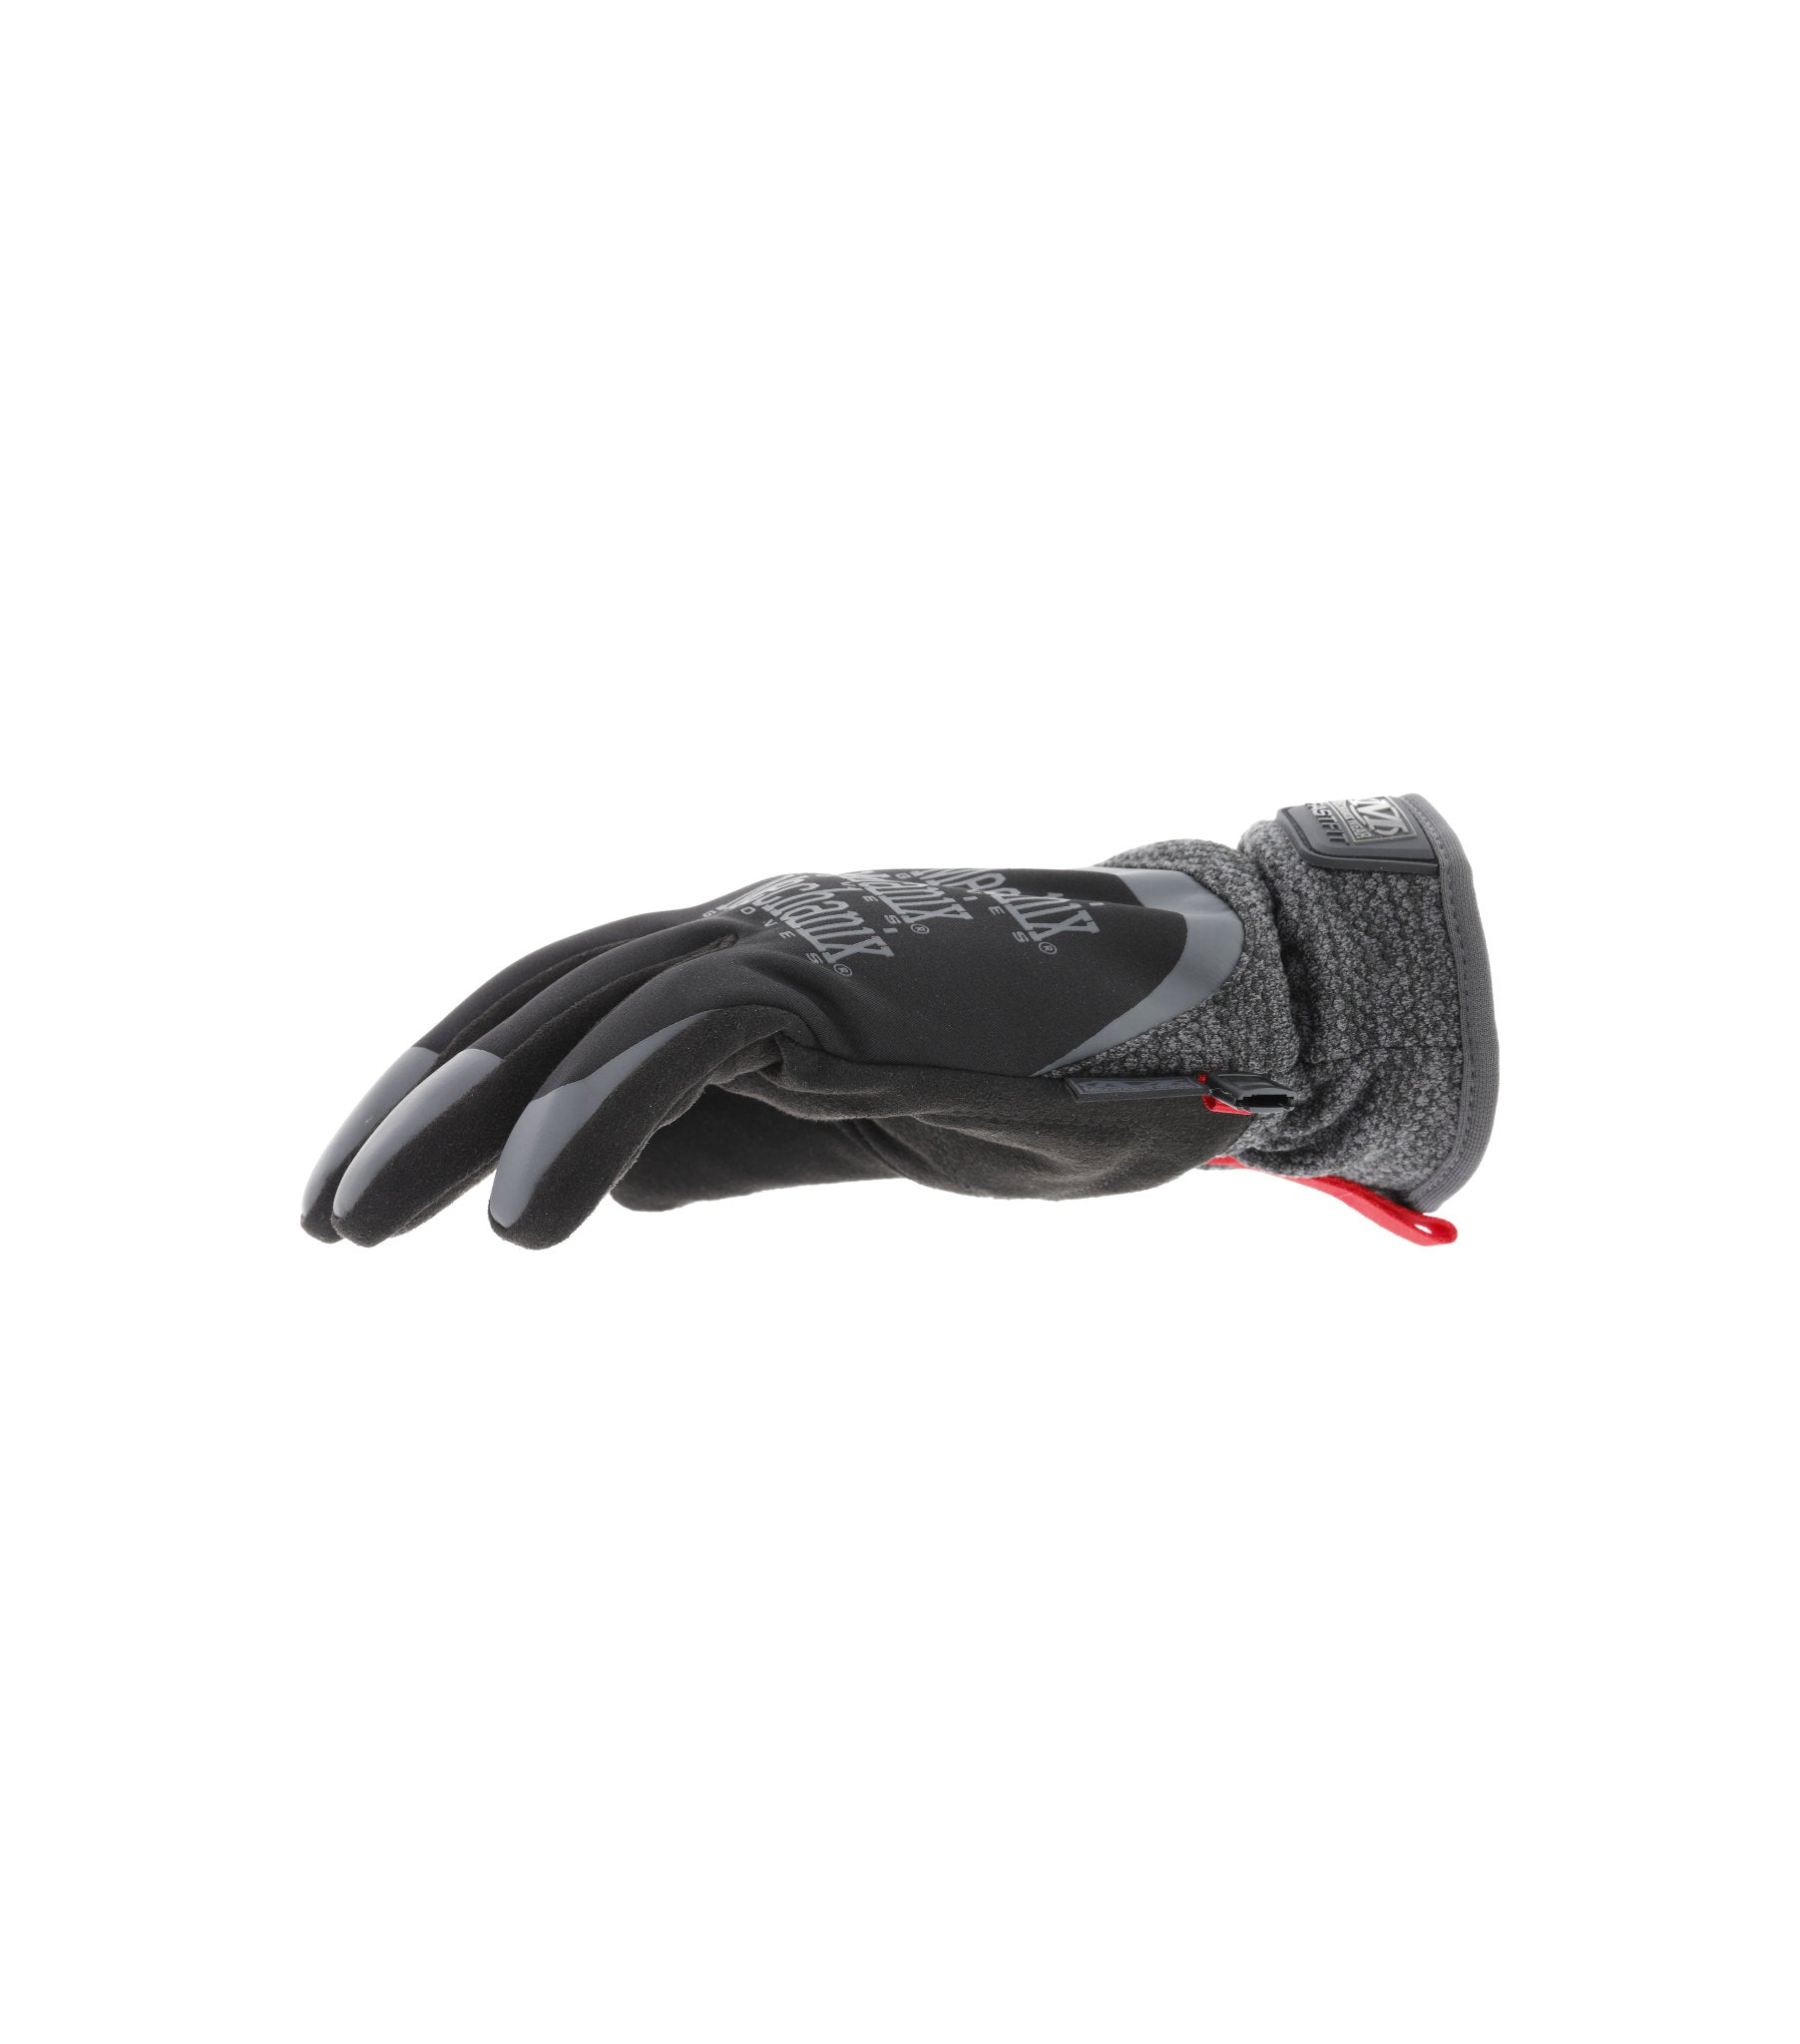 Mechanix ColdWork Fastfit Winter Gloves – Black